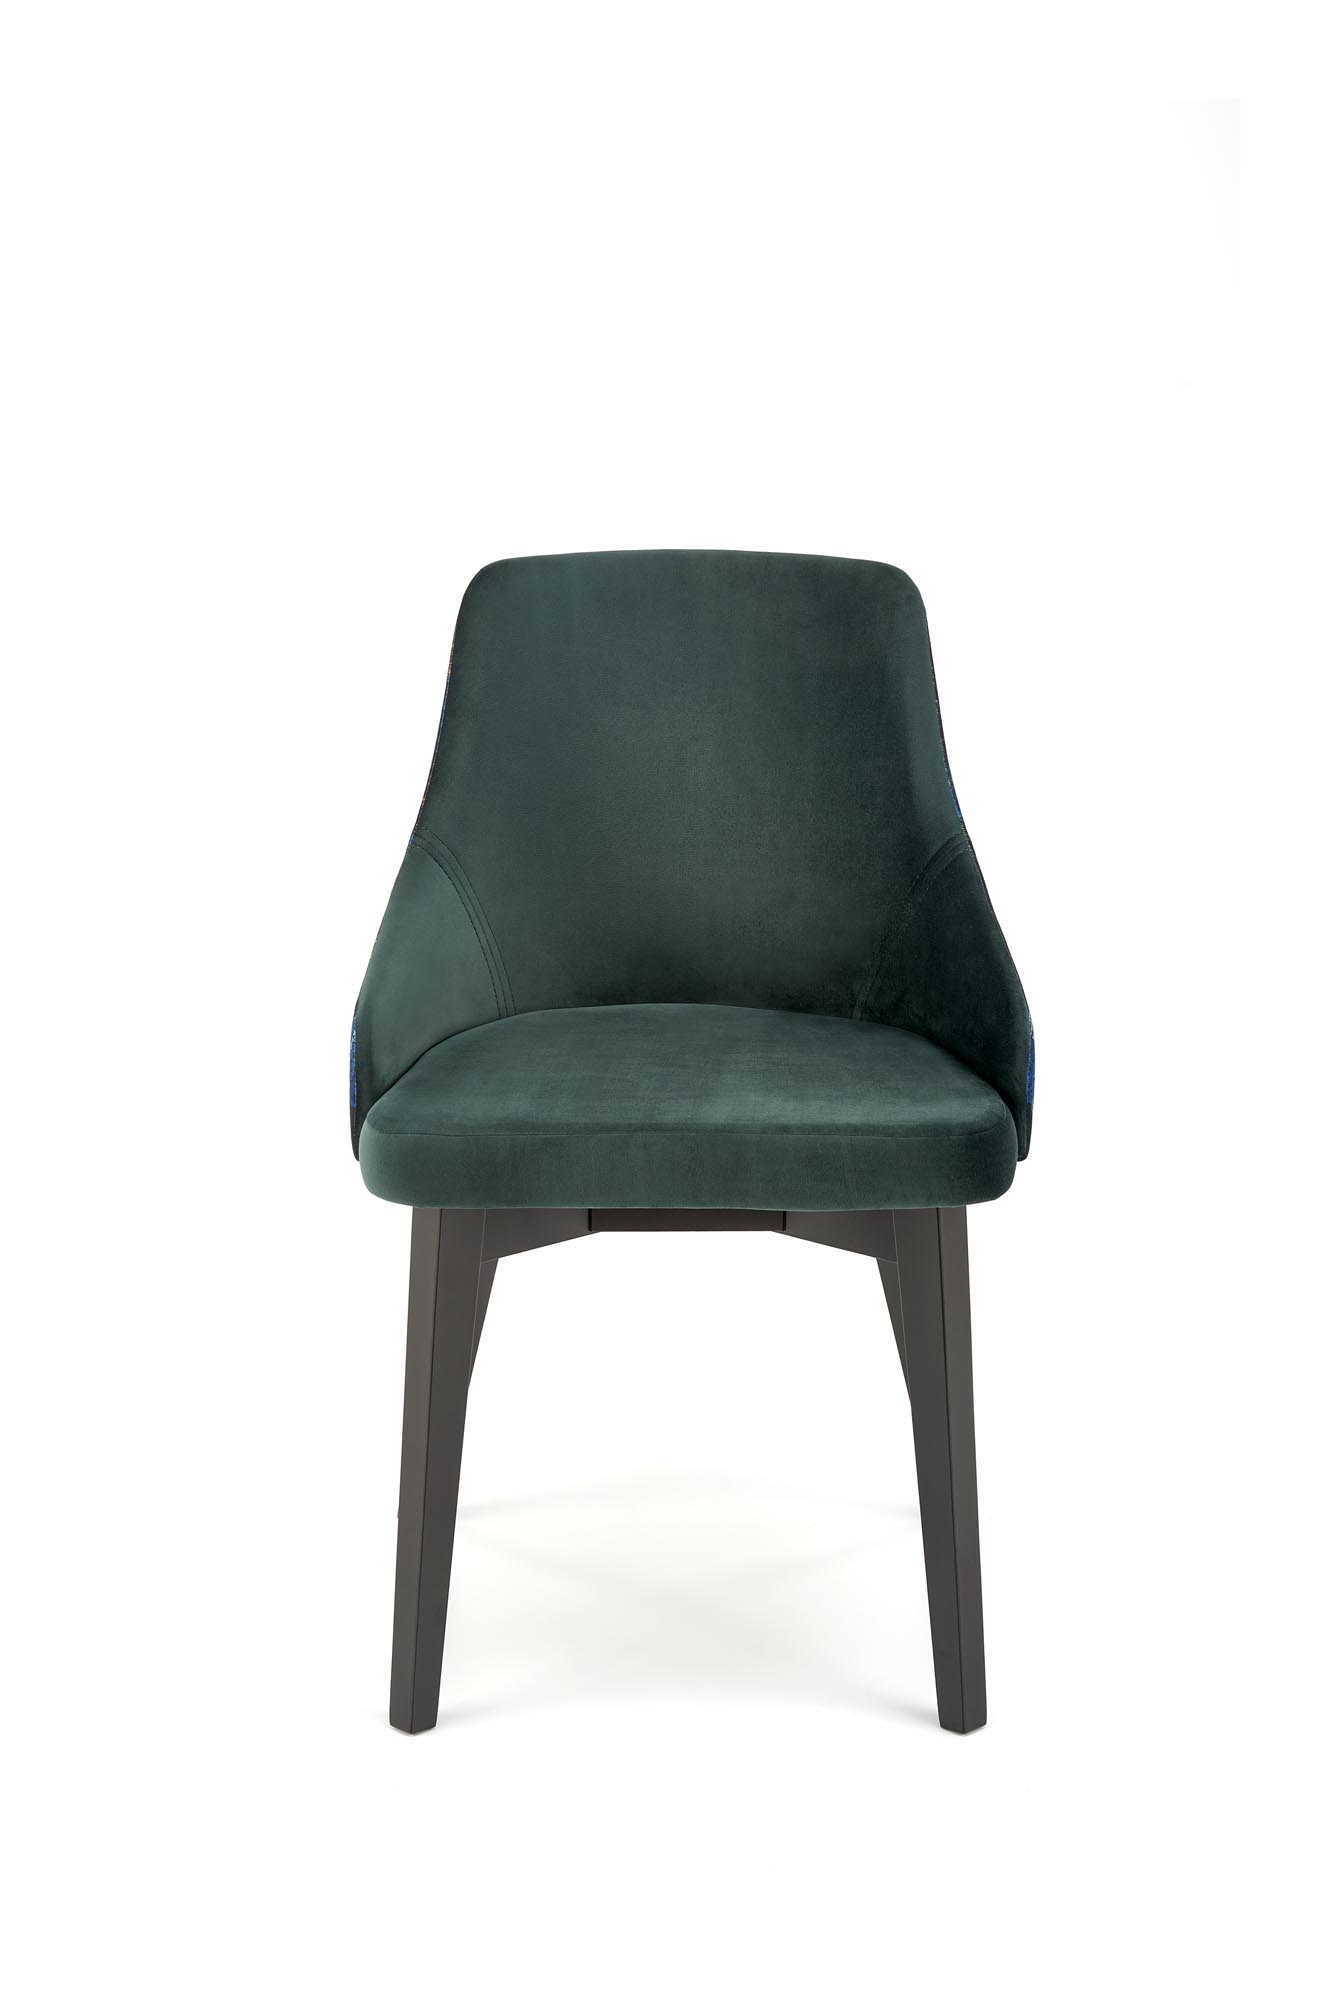 Krzesło tapicerowane Endo - czarny / ciemny zielony krzesło tapicerowane endo - czarny / ciemny zielony